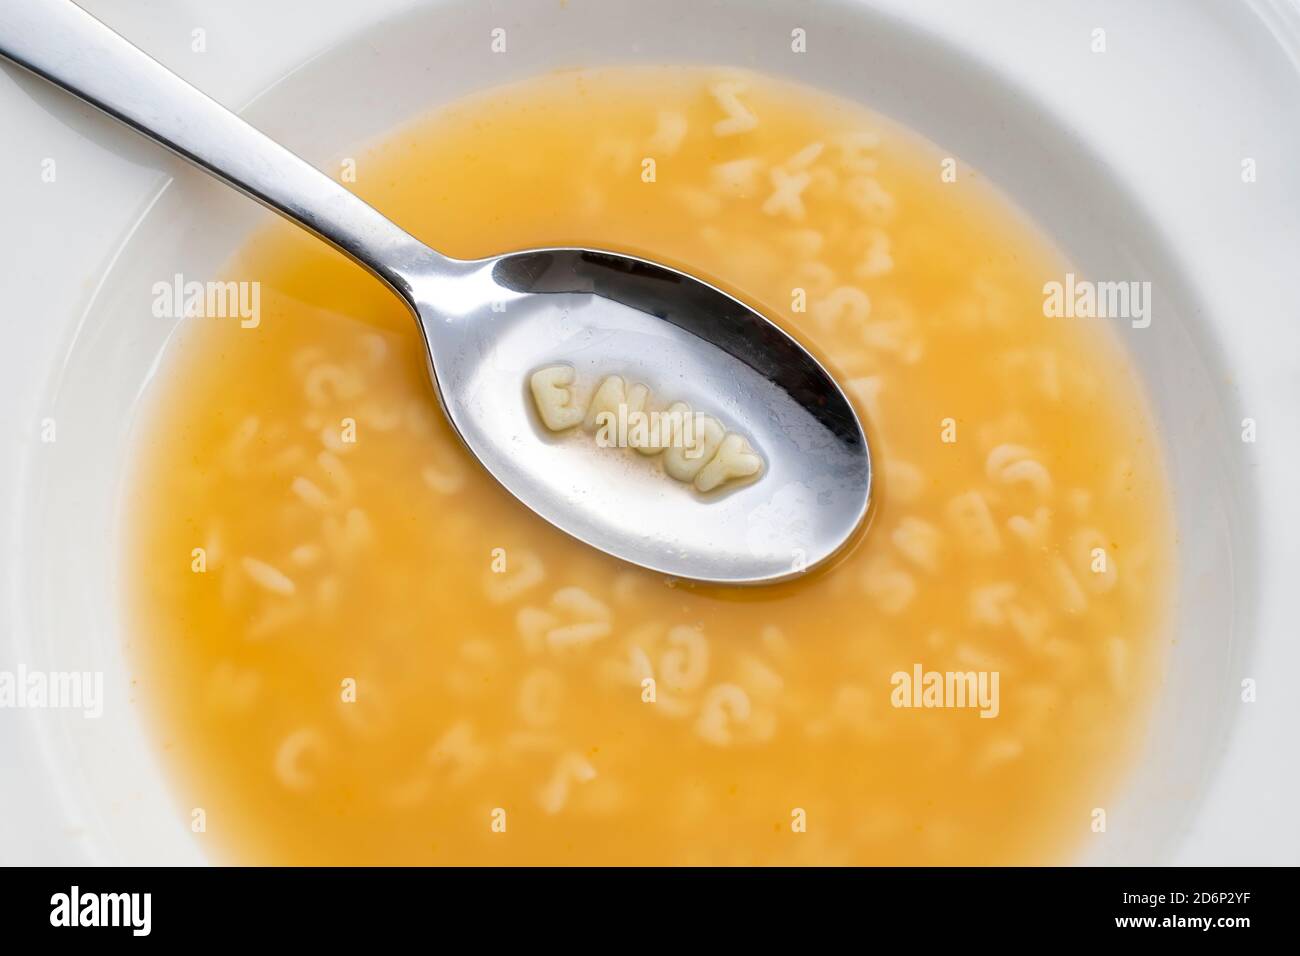 piatto a zuppa di alfabeti con un cucchiaio contenente il messaggio di godere, vista dall'alto Foto Stock